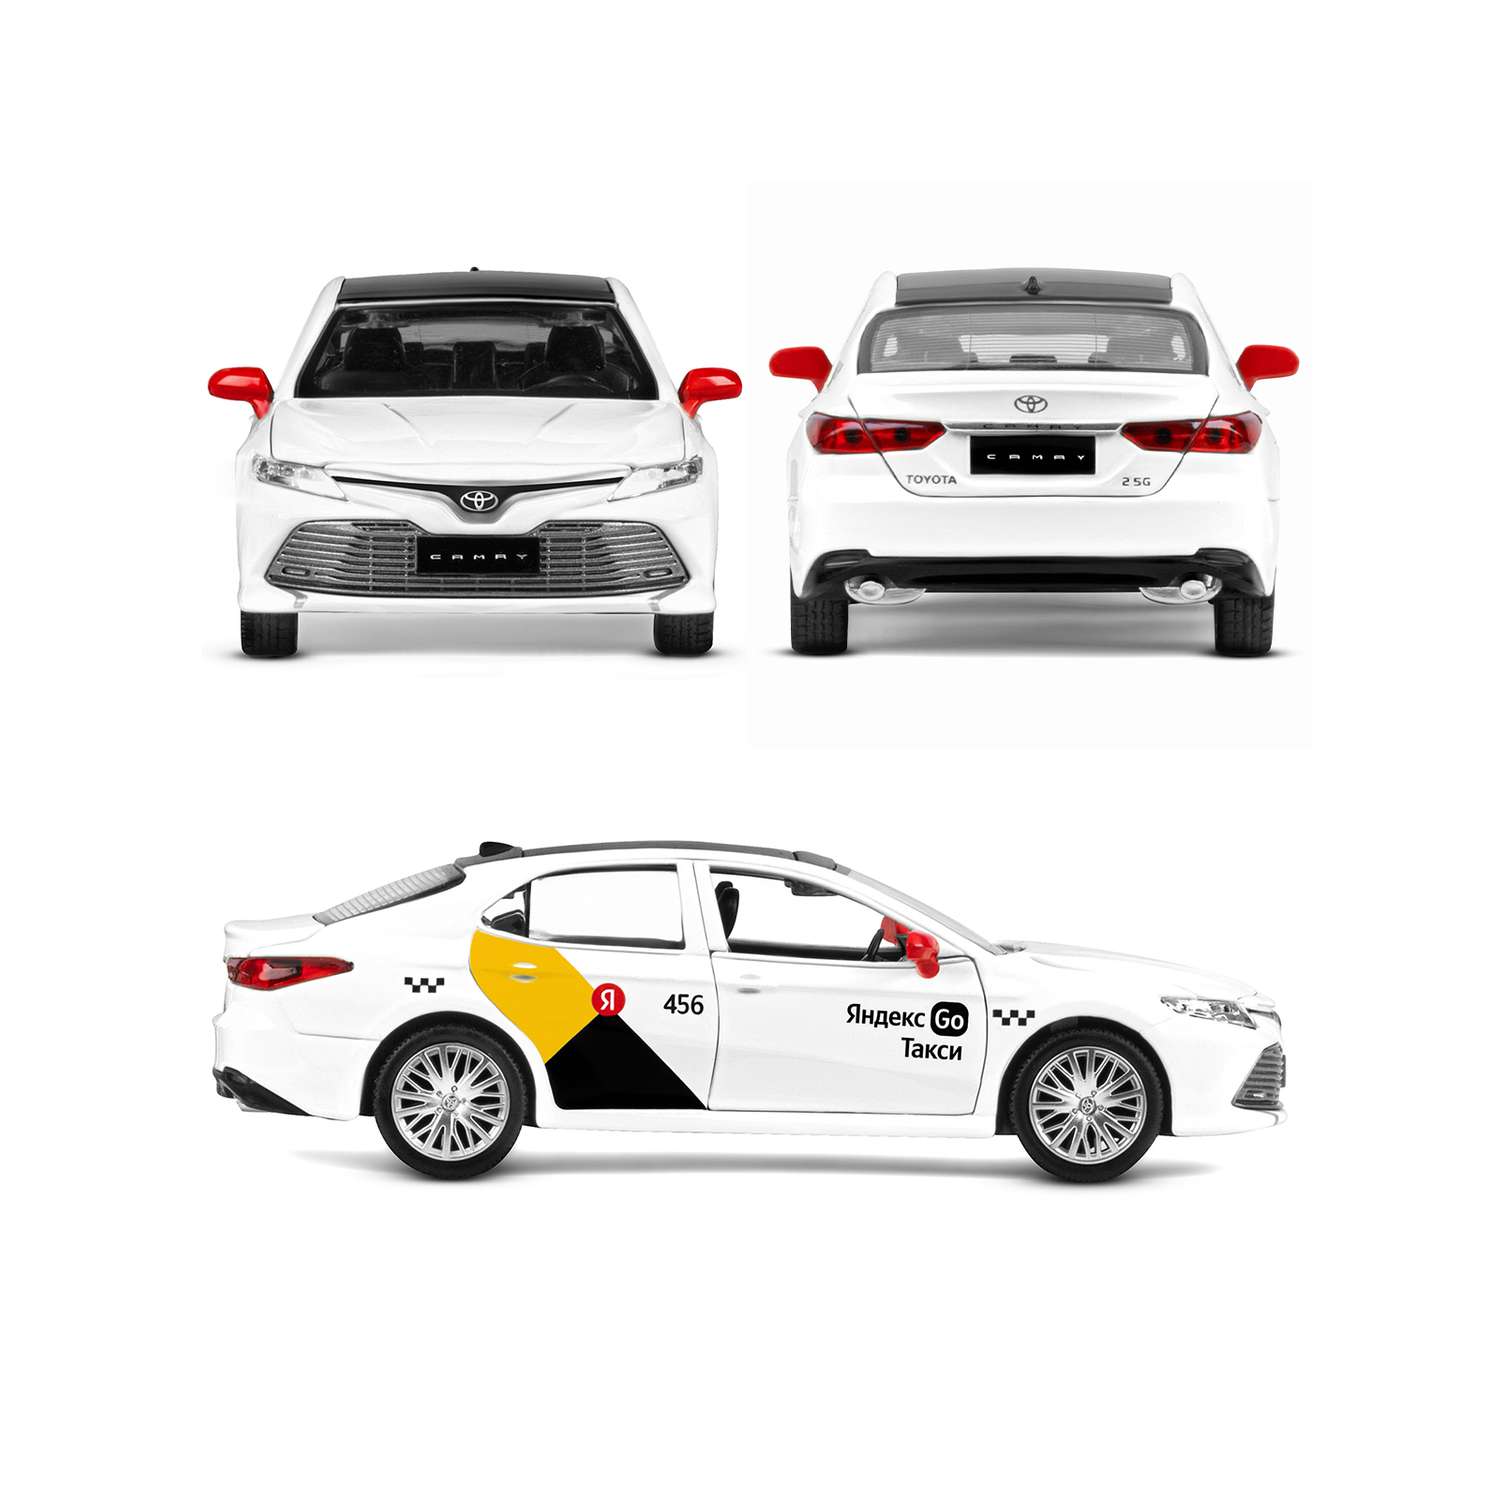 Машинка металлическая Яндекс GO 1:34 Toyota Camry белый инерция Озвучено Алисой JB1251483 - фото 6